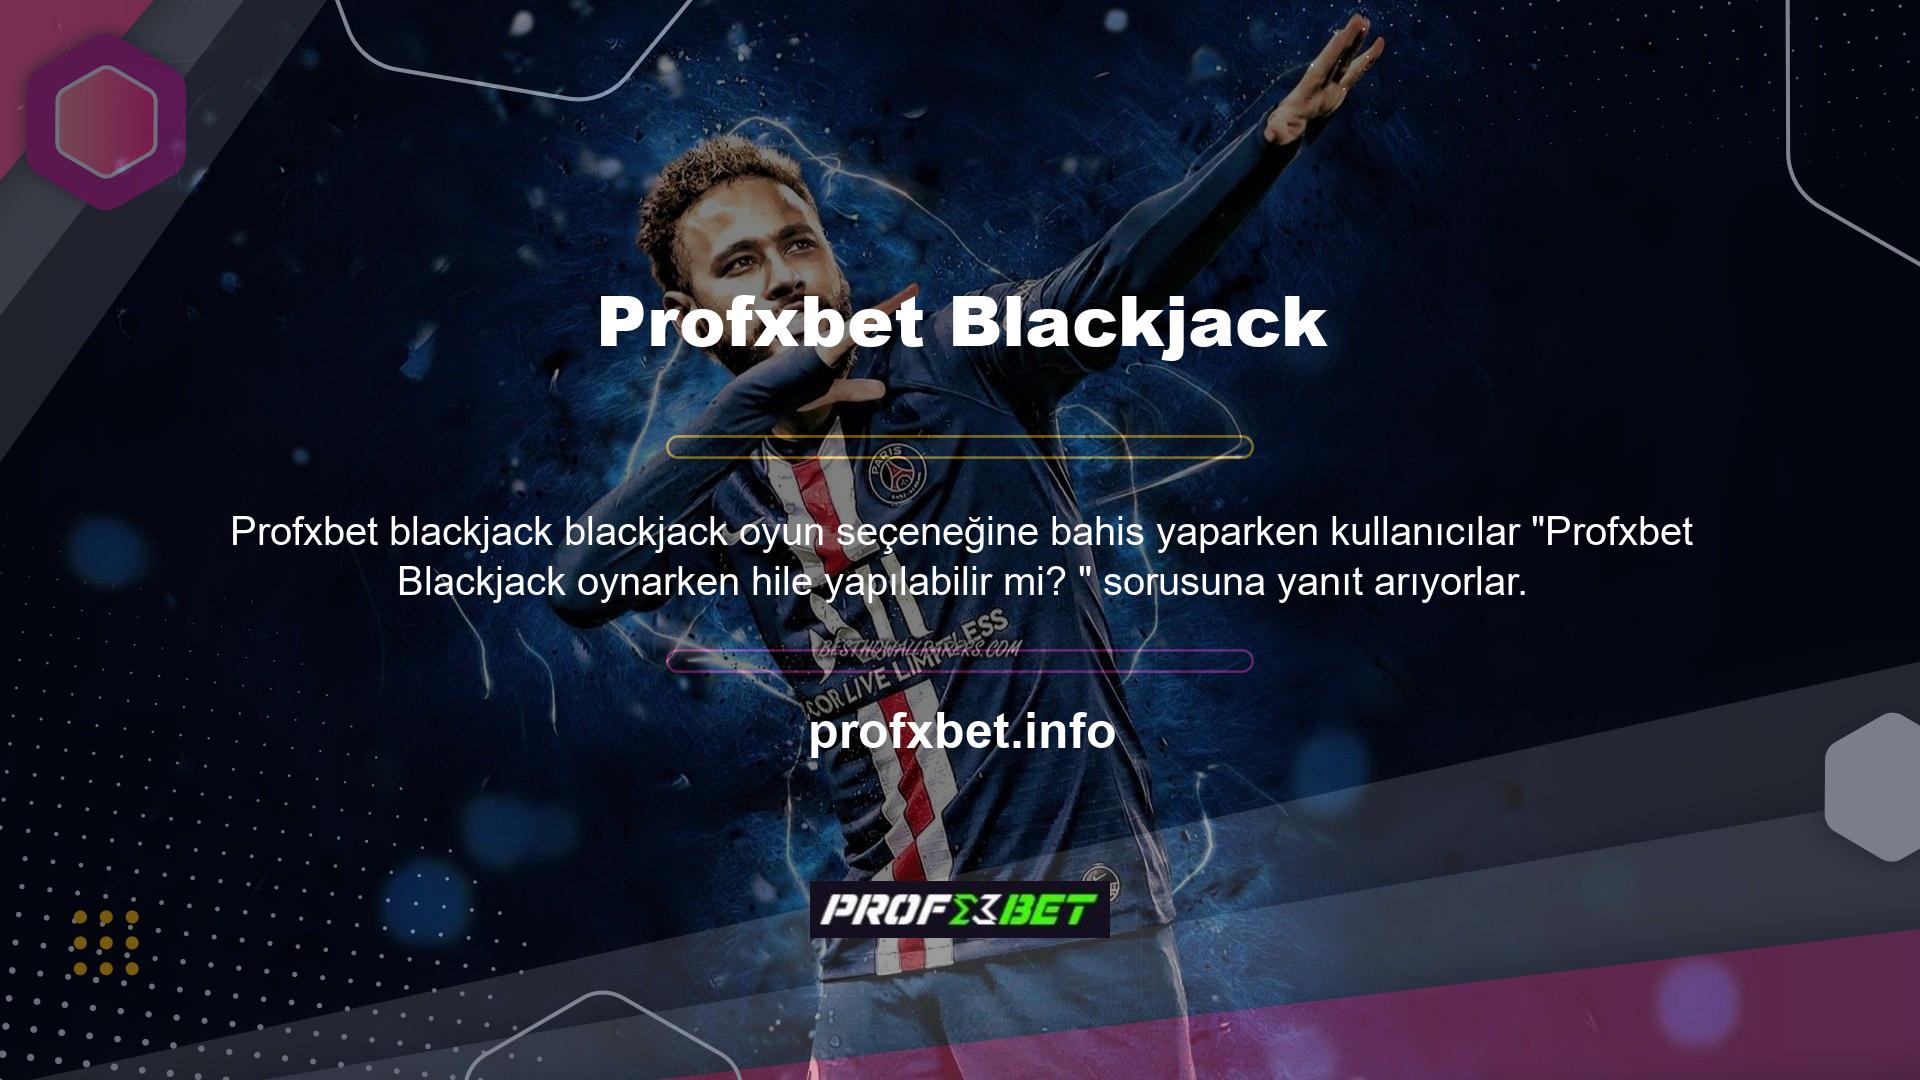 Profxbet Casino web sitesinde Profxbet Blackjack, oyun altyapısı ve güven seçenekleriyle bu soruya doğrudan cevap veriyor